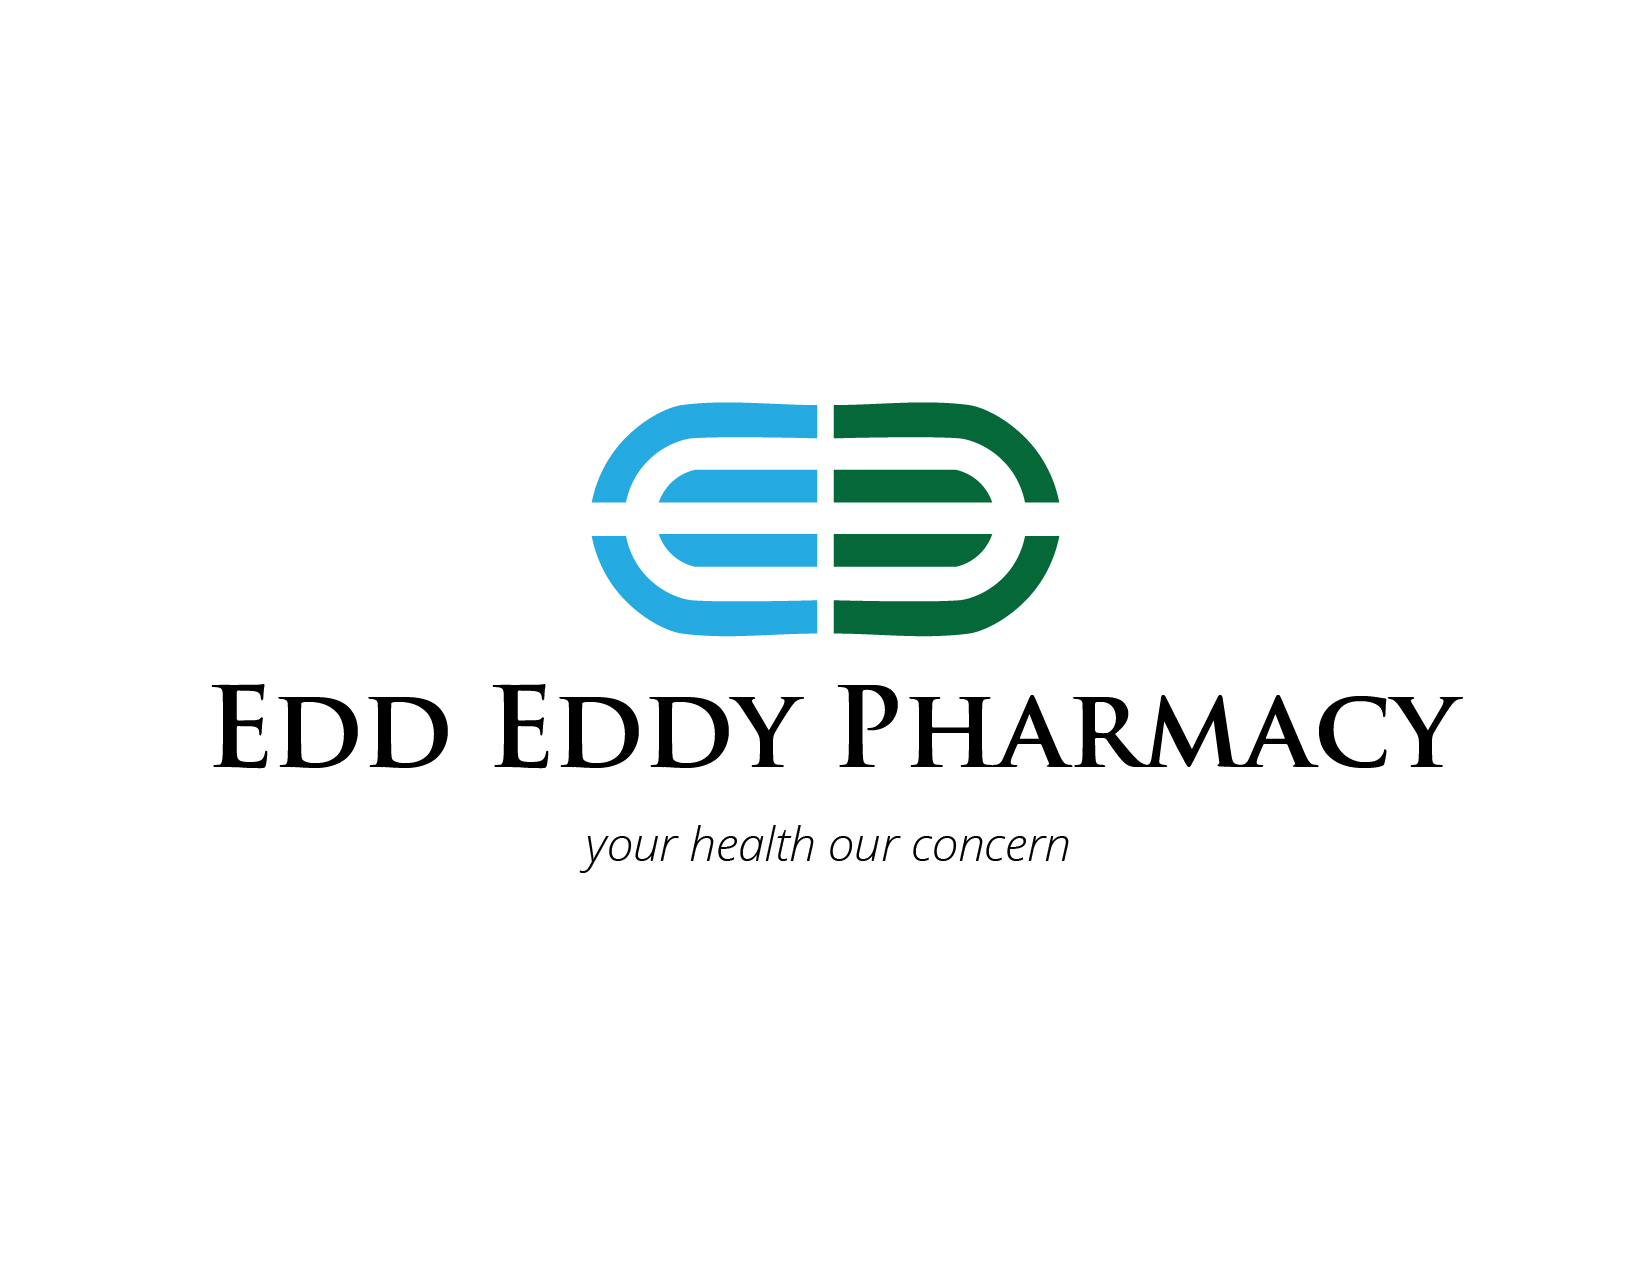 EDD EDDY Pharmacy